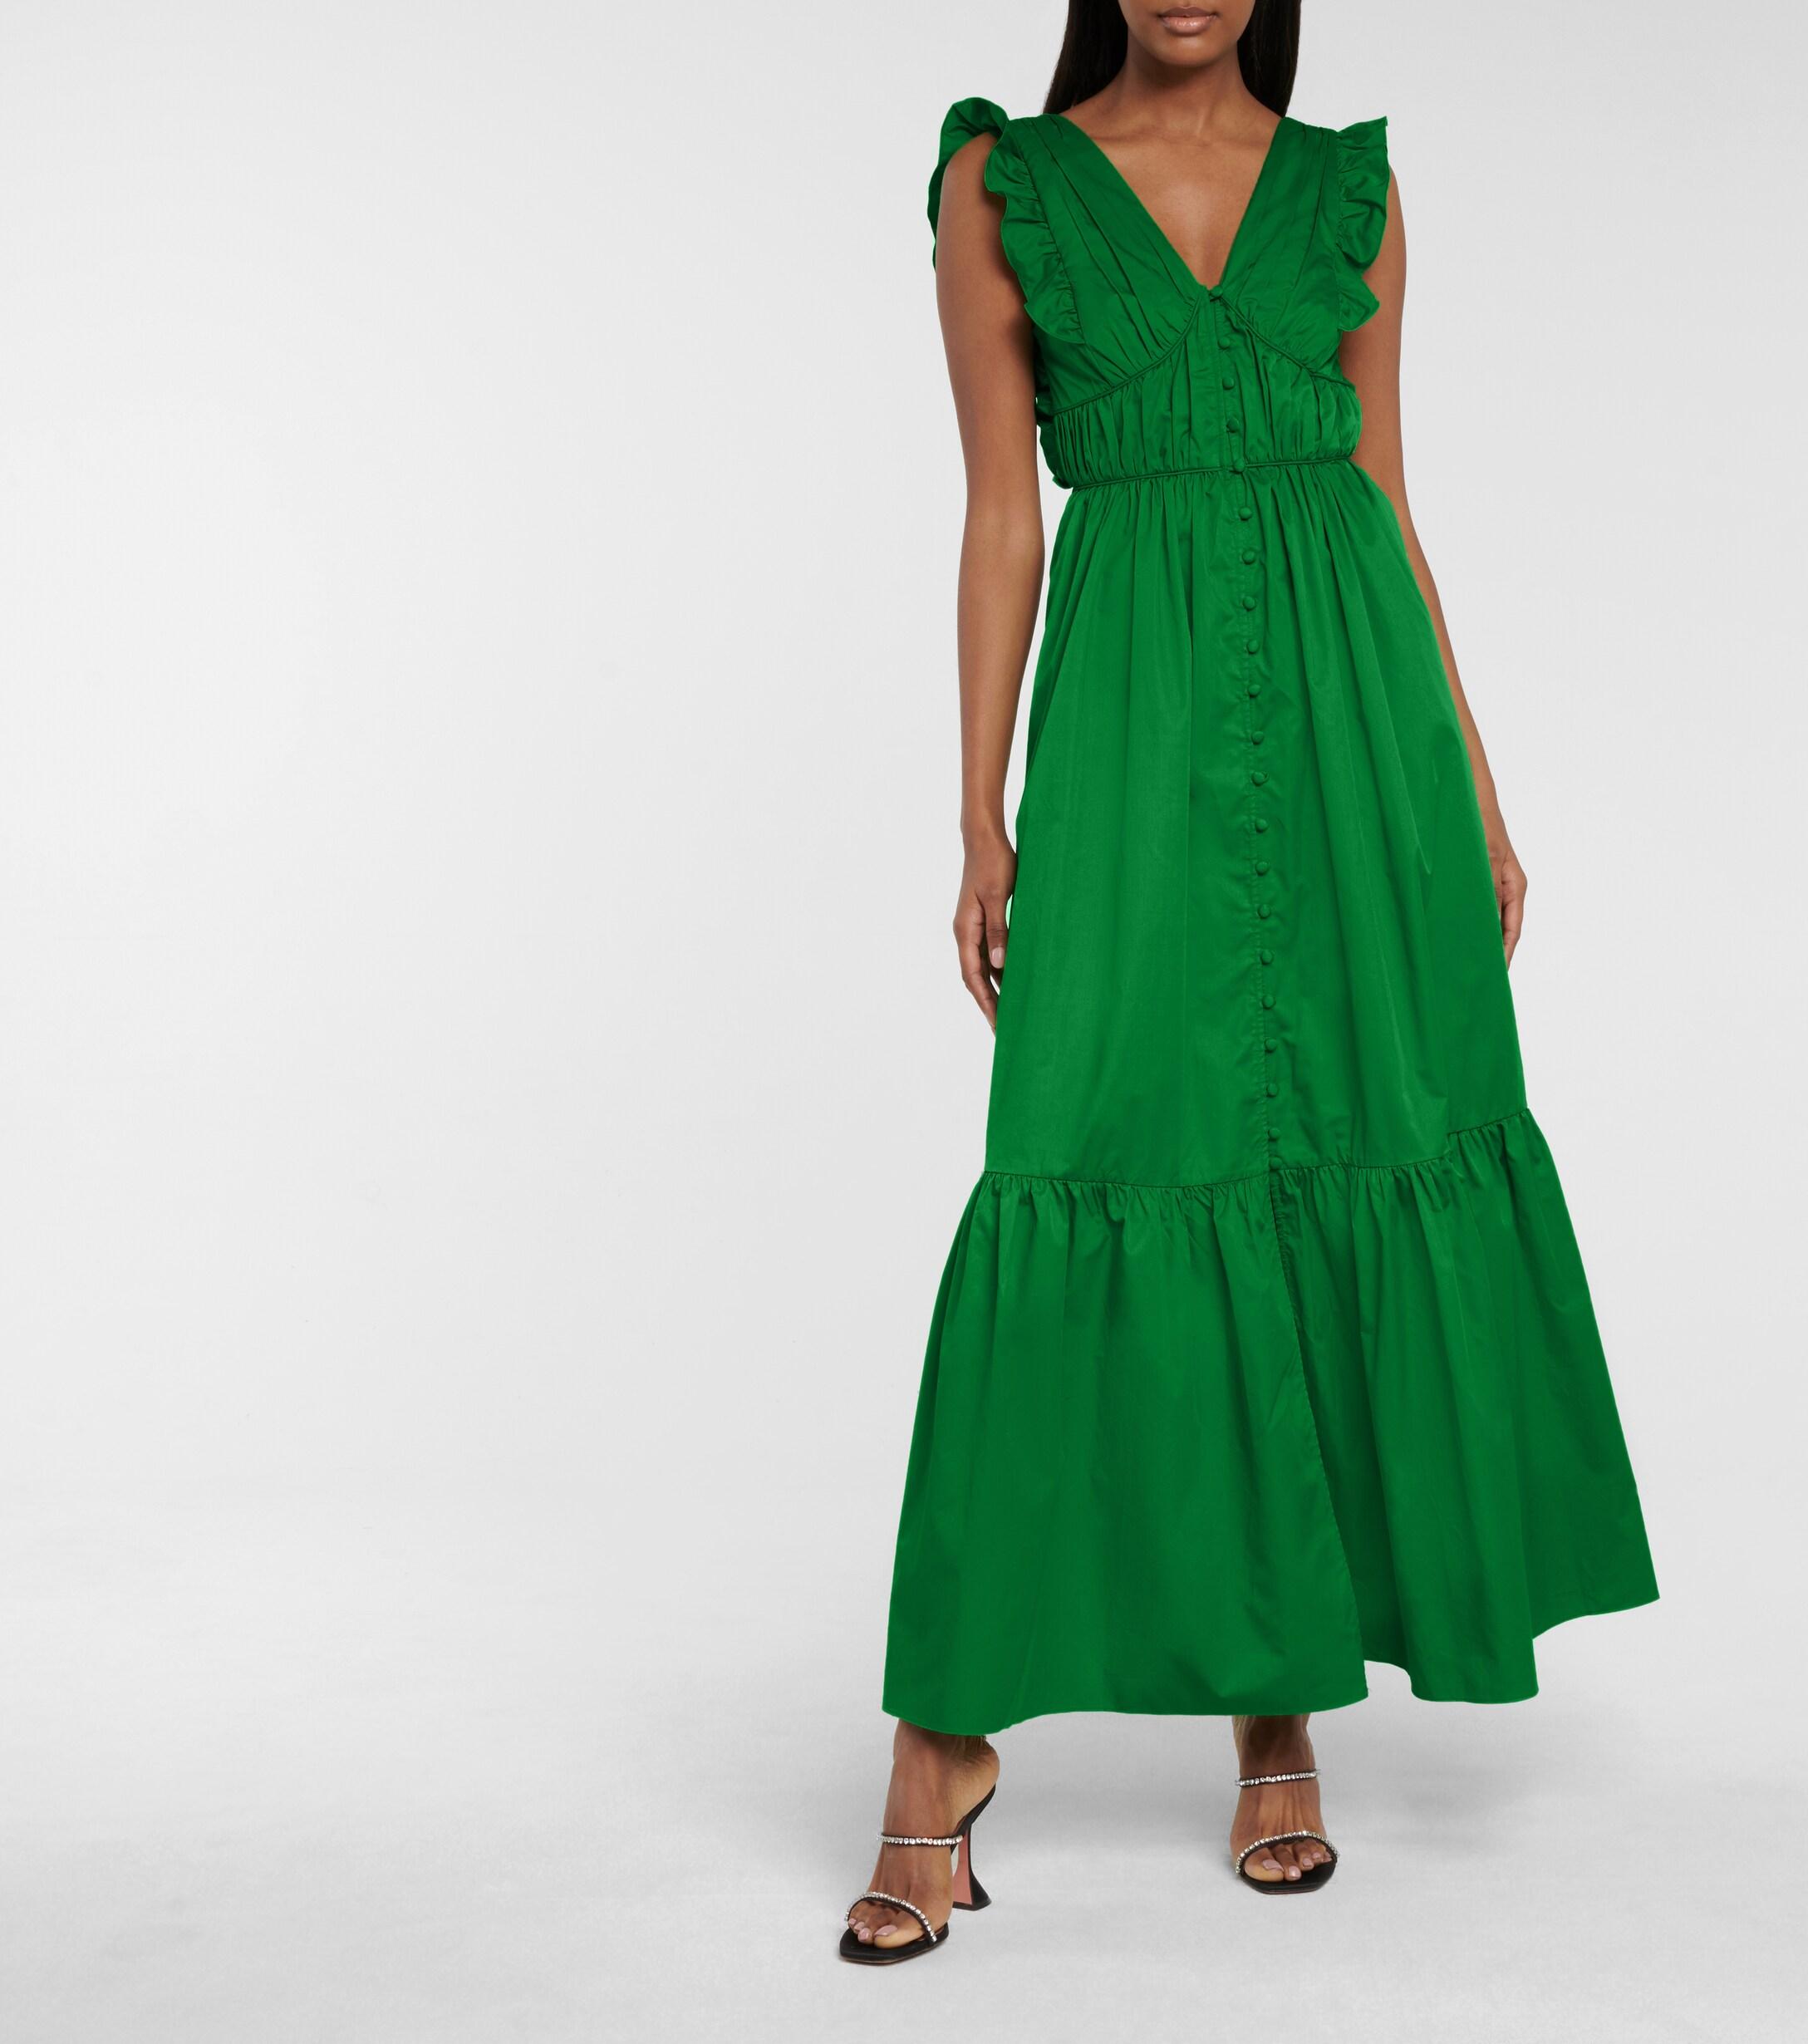 green cotton dress